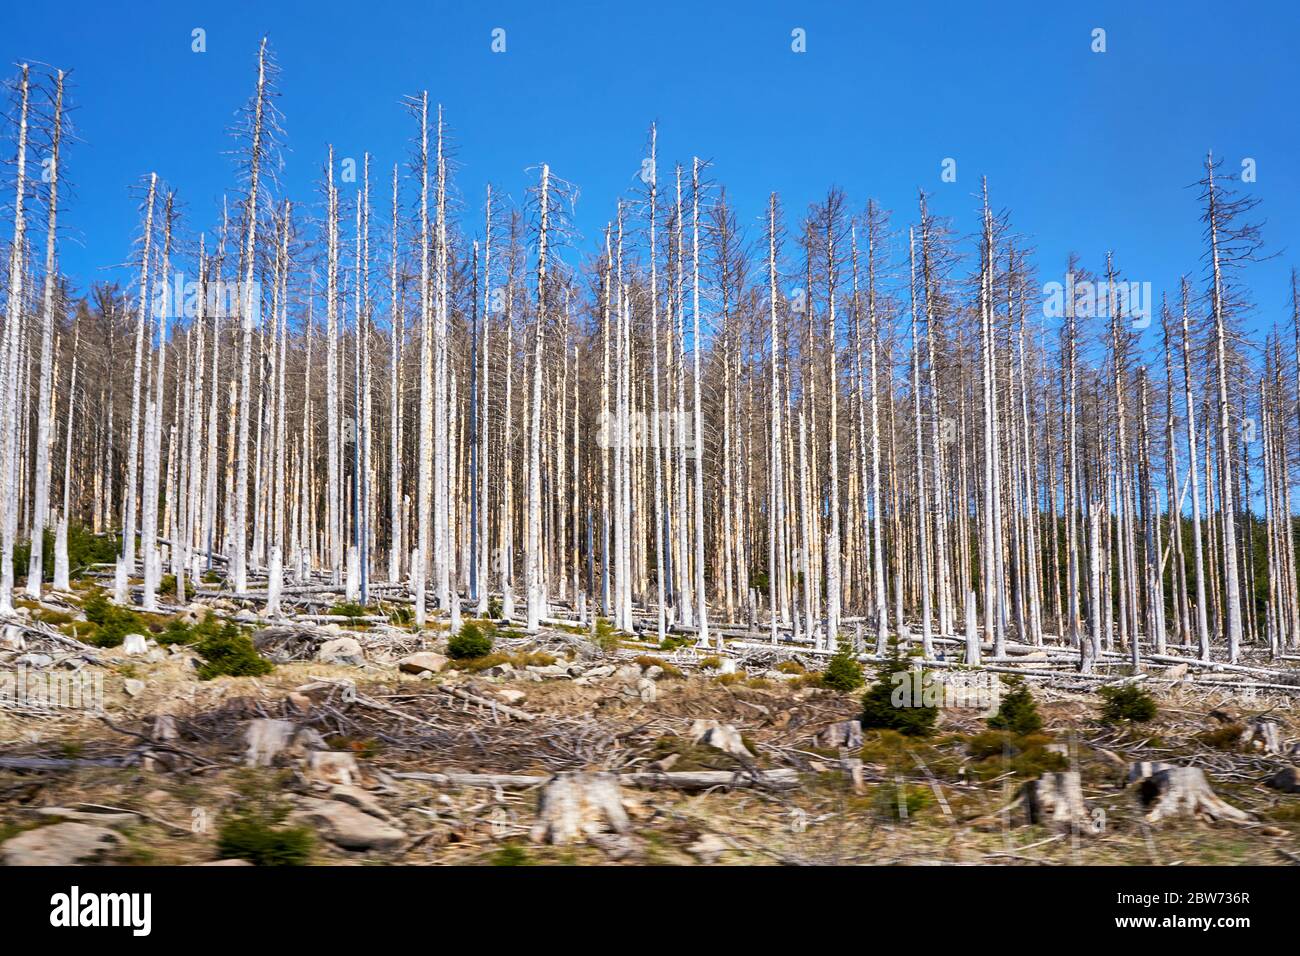 Toter Wald mit alten Bäumen in Deutschland. Durch Klimawandel, Dürre und Rindenkäfer. Dynamik durch Bewegungsunschärfe. Stockfoto